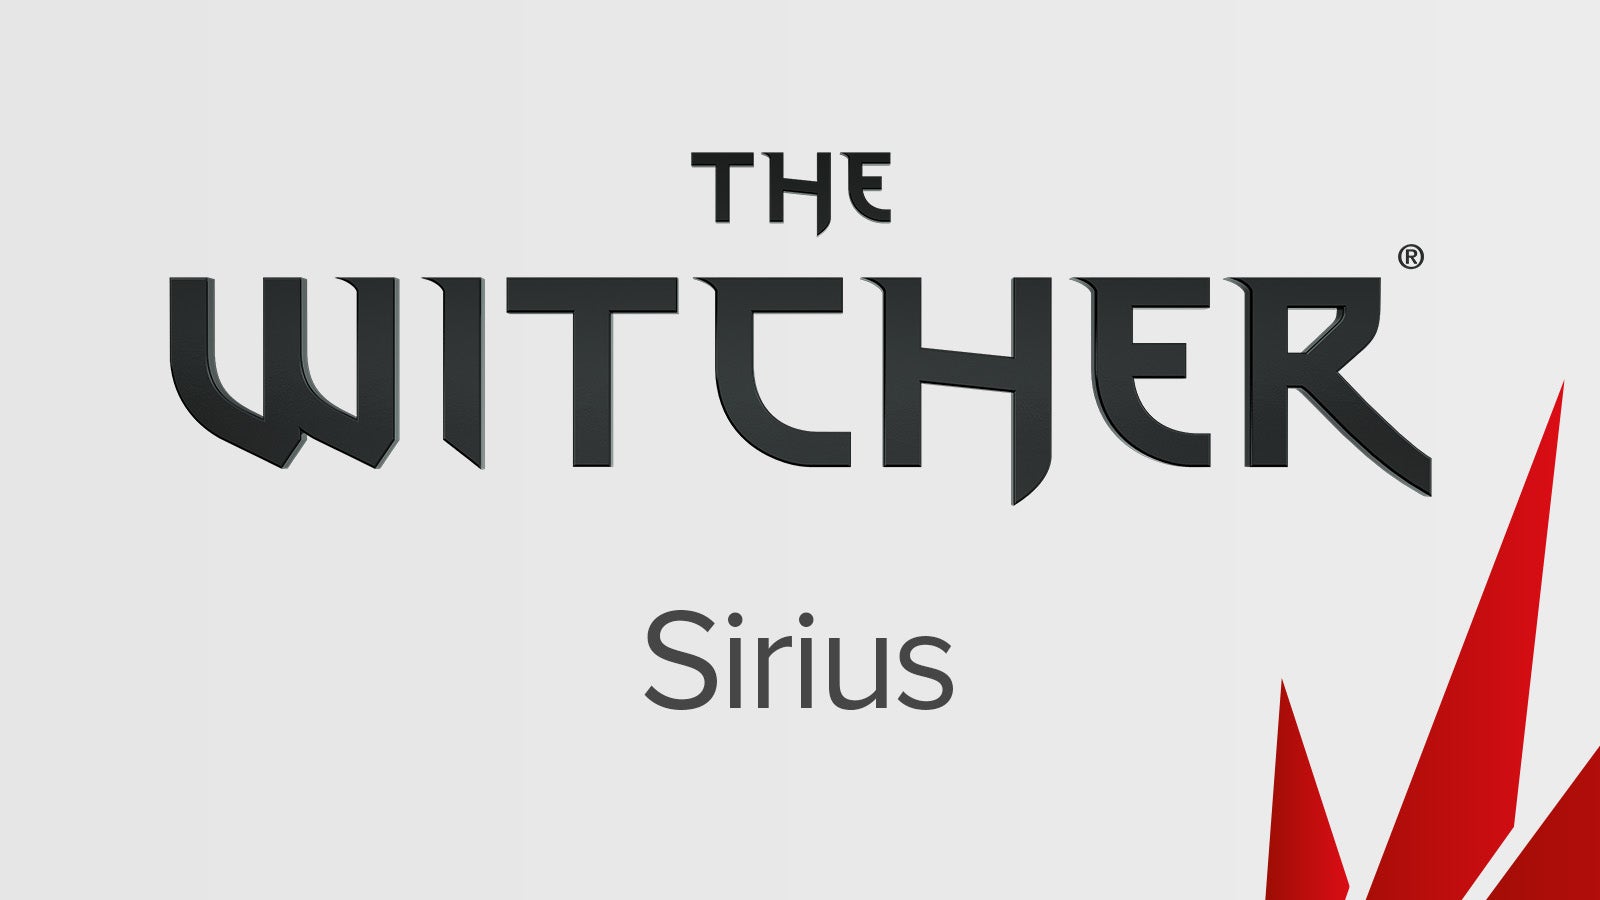 Immagine di The Witcher Project Sirius: gli annunci di lavoro fanno riferimento ad ambienti creati proceduralmente